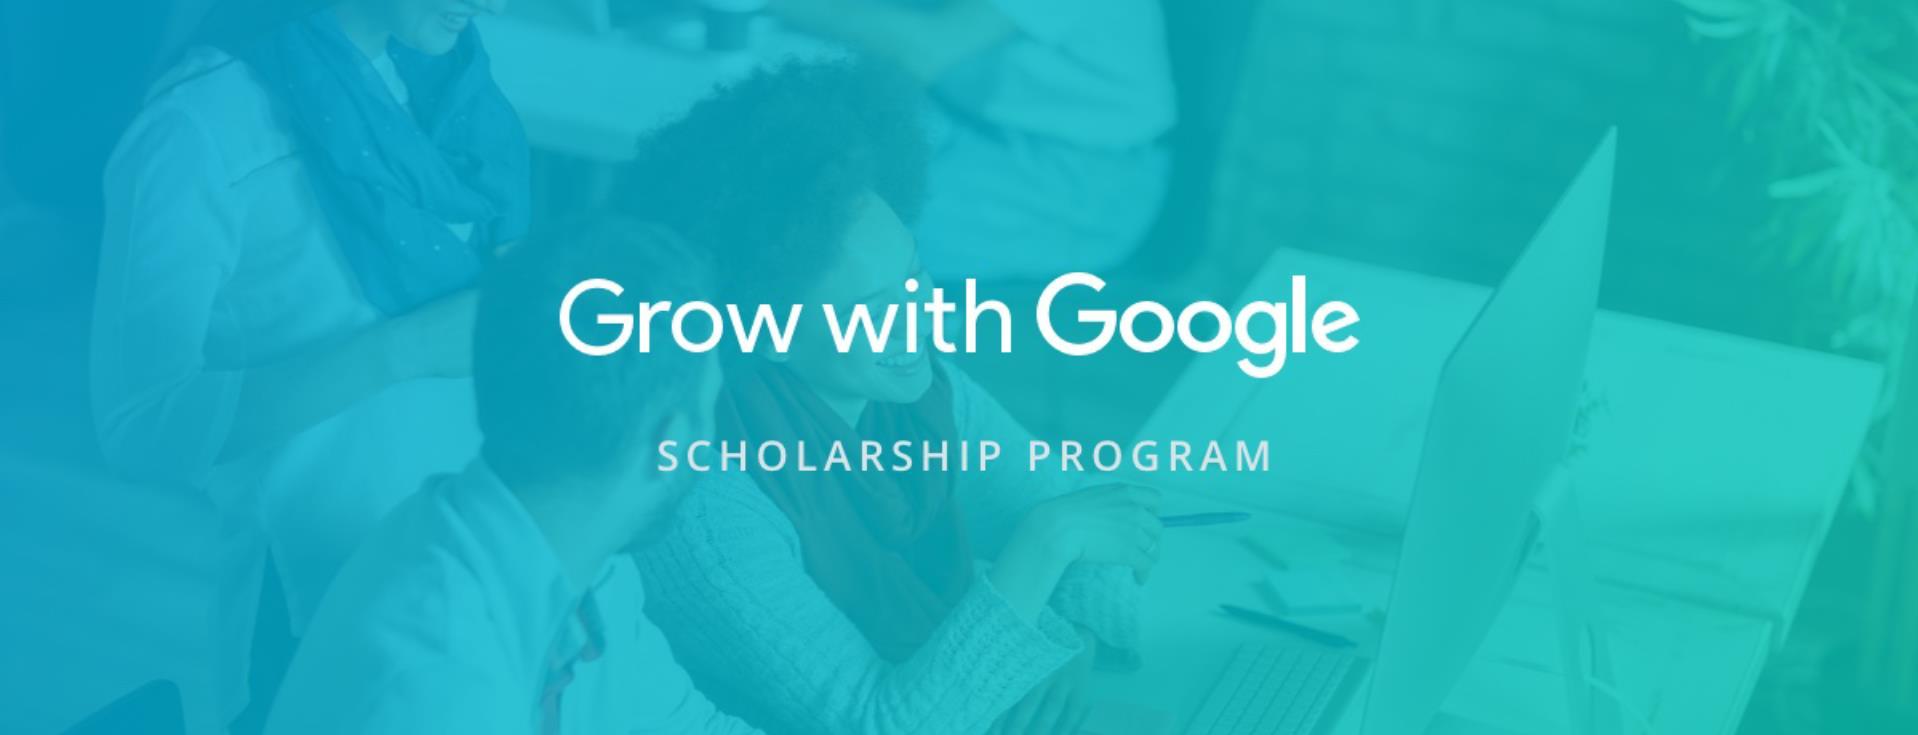 Google ve Udacity İş Arayanlar İçin Ücretsiz Eğitimlere Başladı